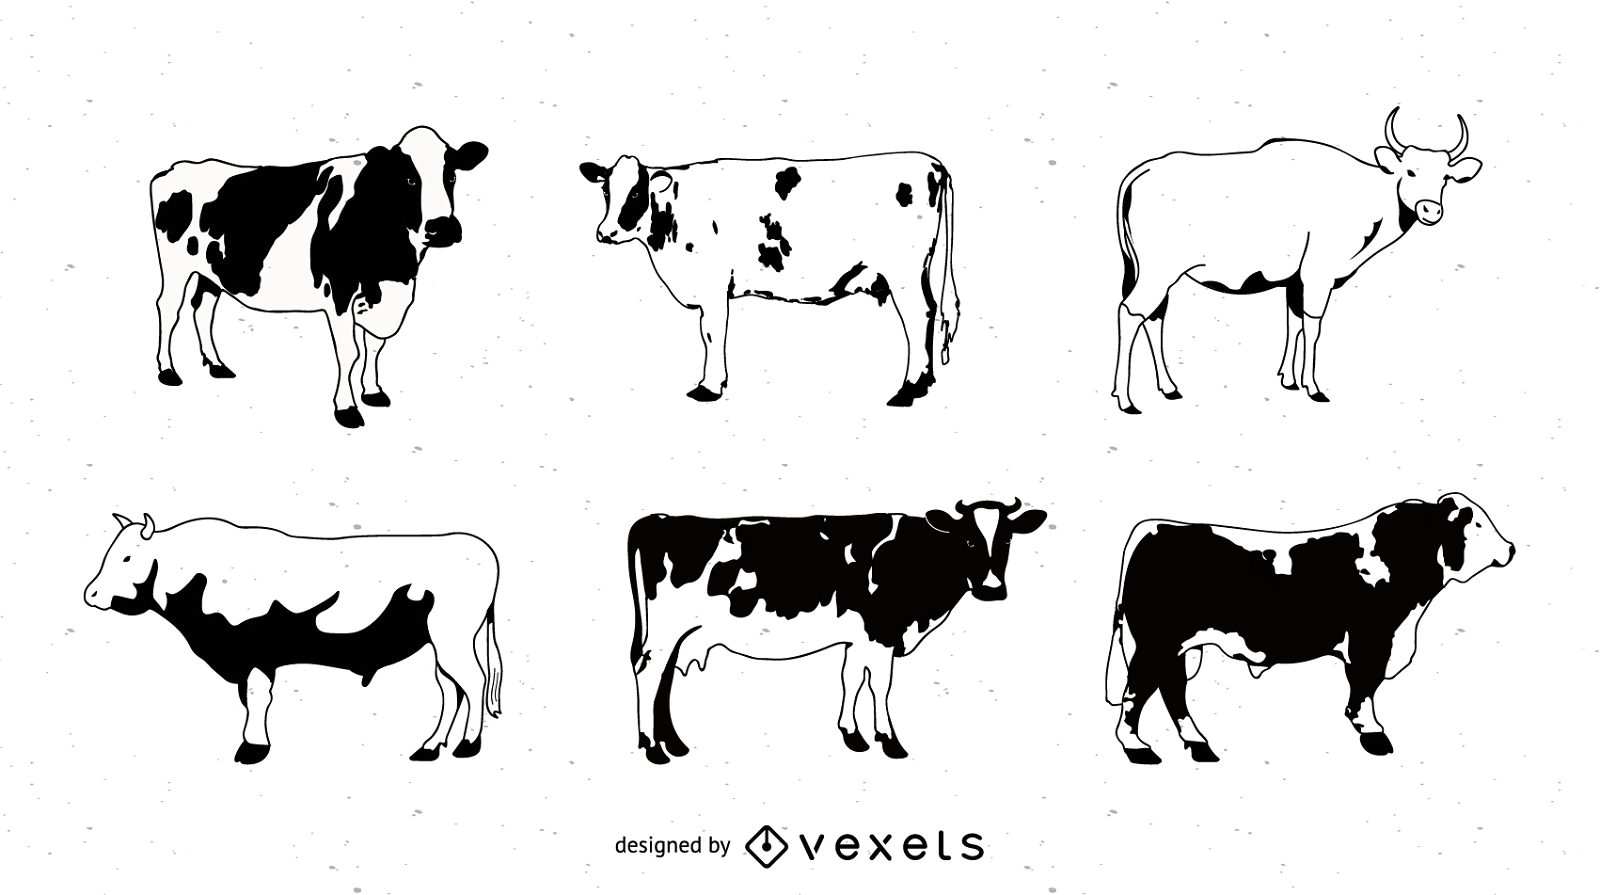 S?rie de imagens em preto e branco de um vetor de vaca pintada